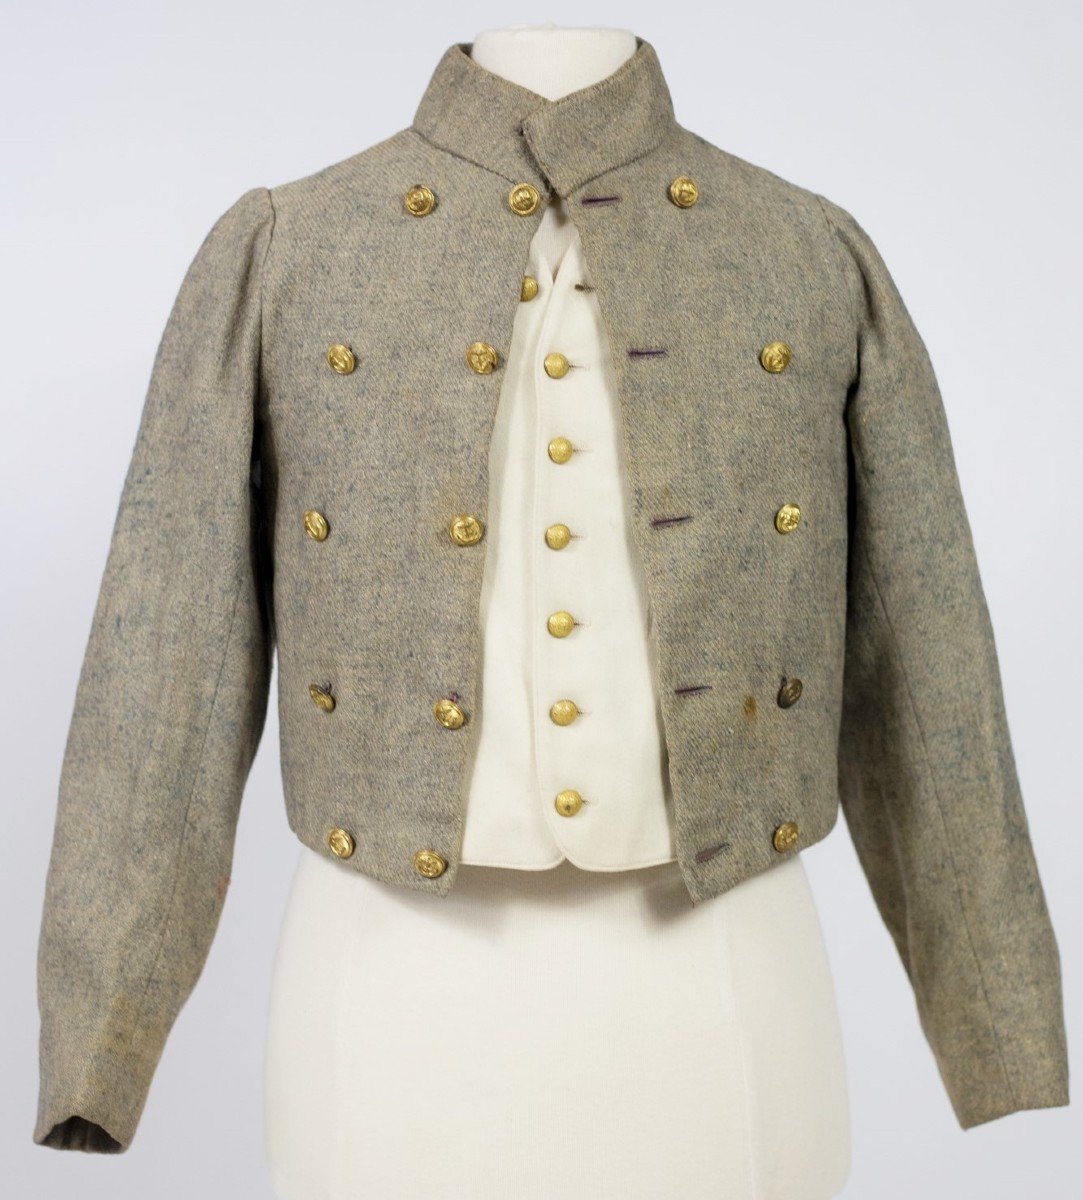 Frac & Boy's Vest In Heathered Indigo Wool - France Circa 1880-1900